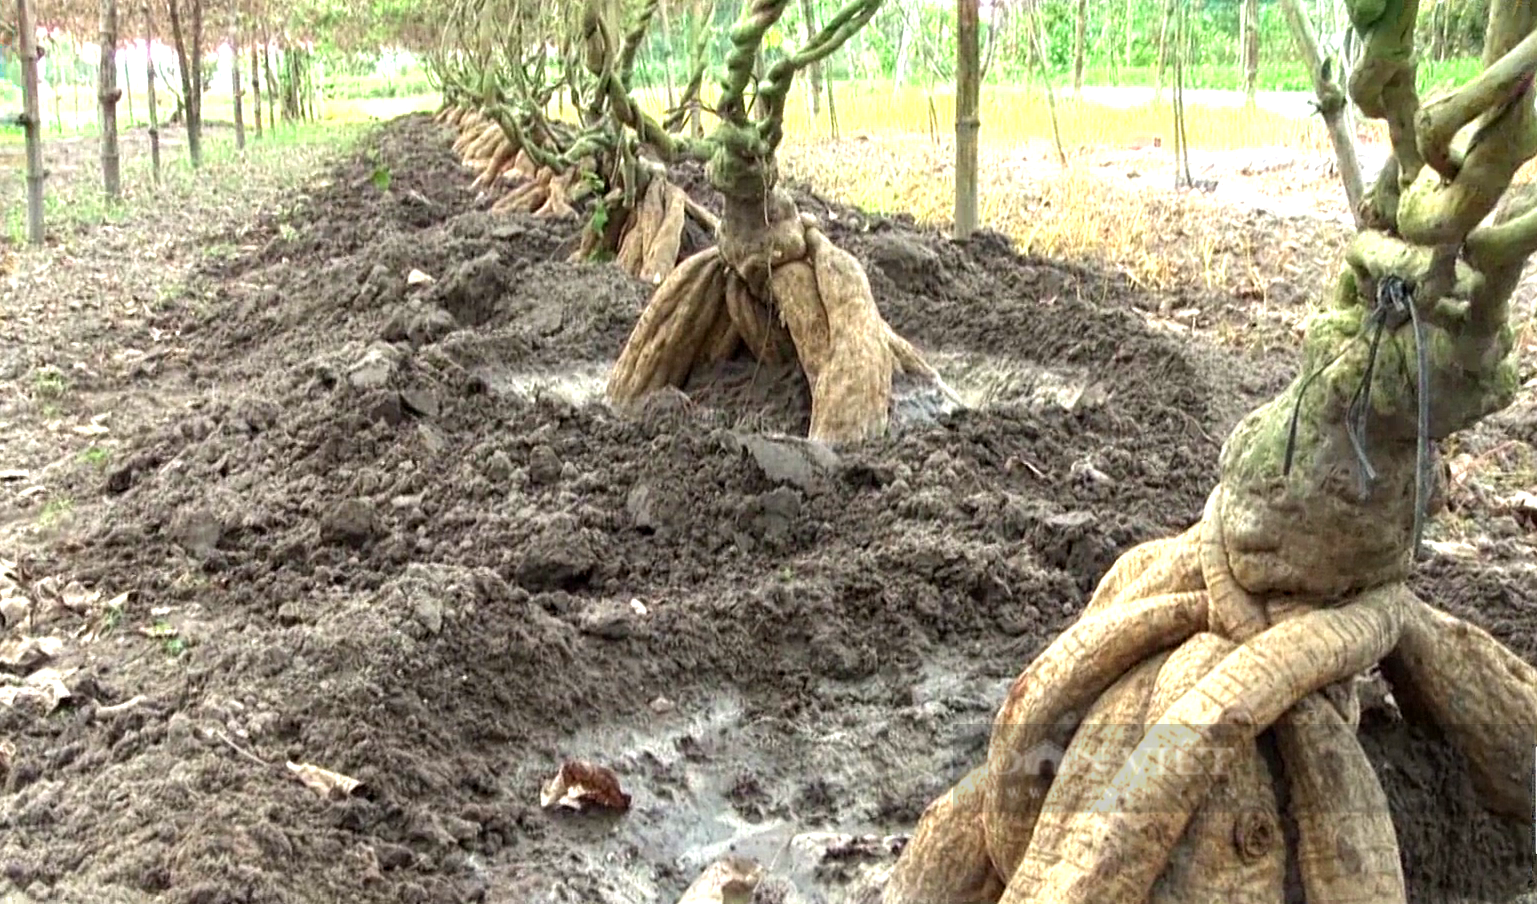 Anh nông dân Tây Ninh trồng loại củ khổng lồ vừa ăn vừa làm thuốc, đào lên không đủ bán - Ảnh 3.